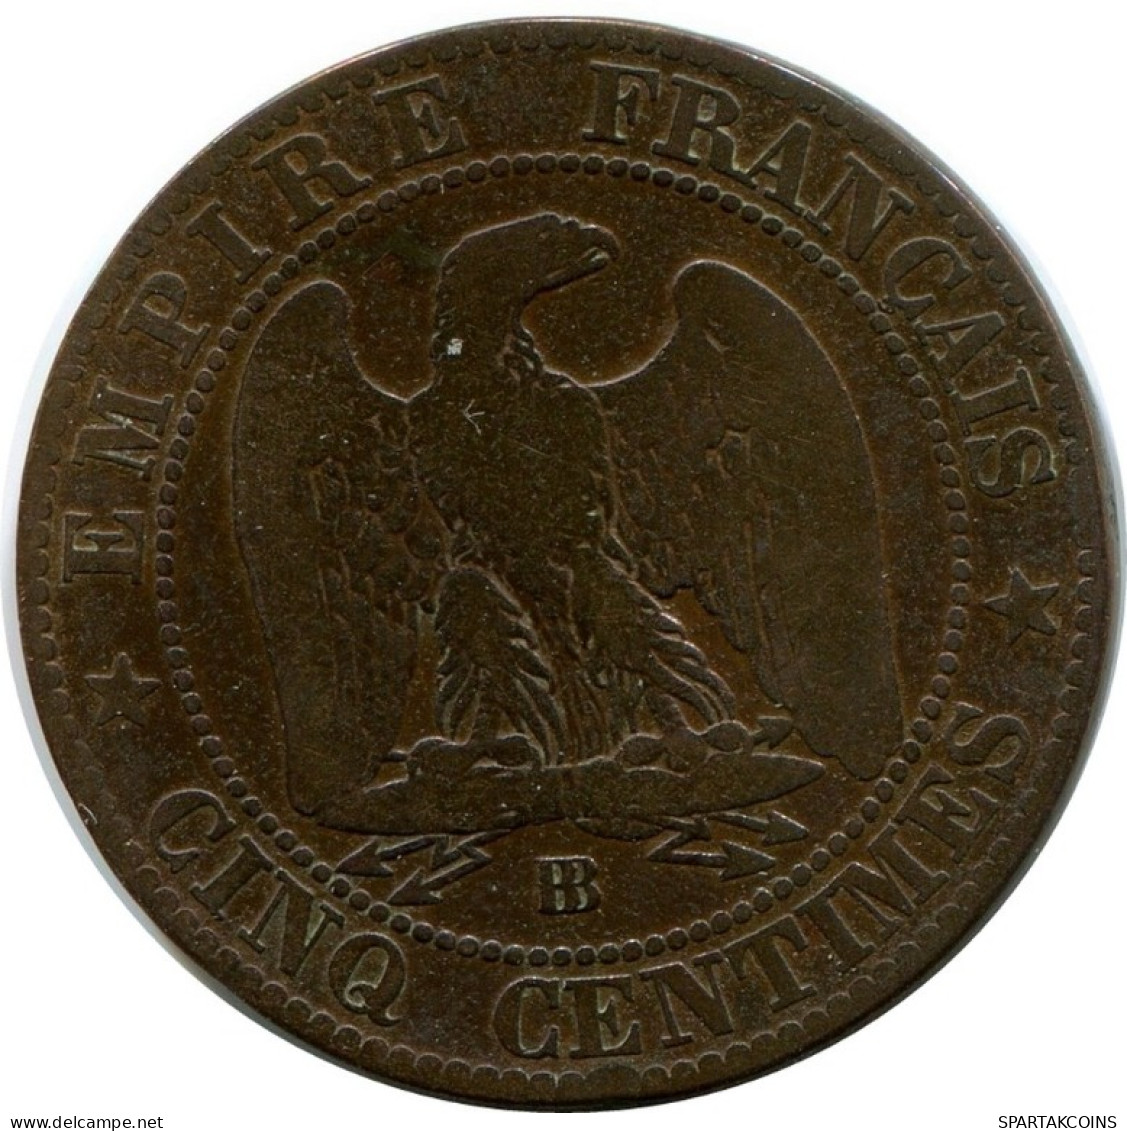 5 CENTIMES 1865 BB FRANKREICH FRANCE Französisch Münze #AM954.D.A - 5 Centimes